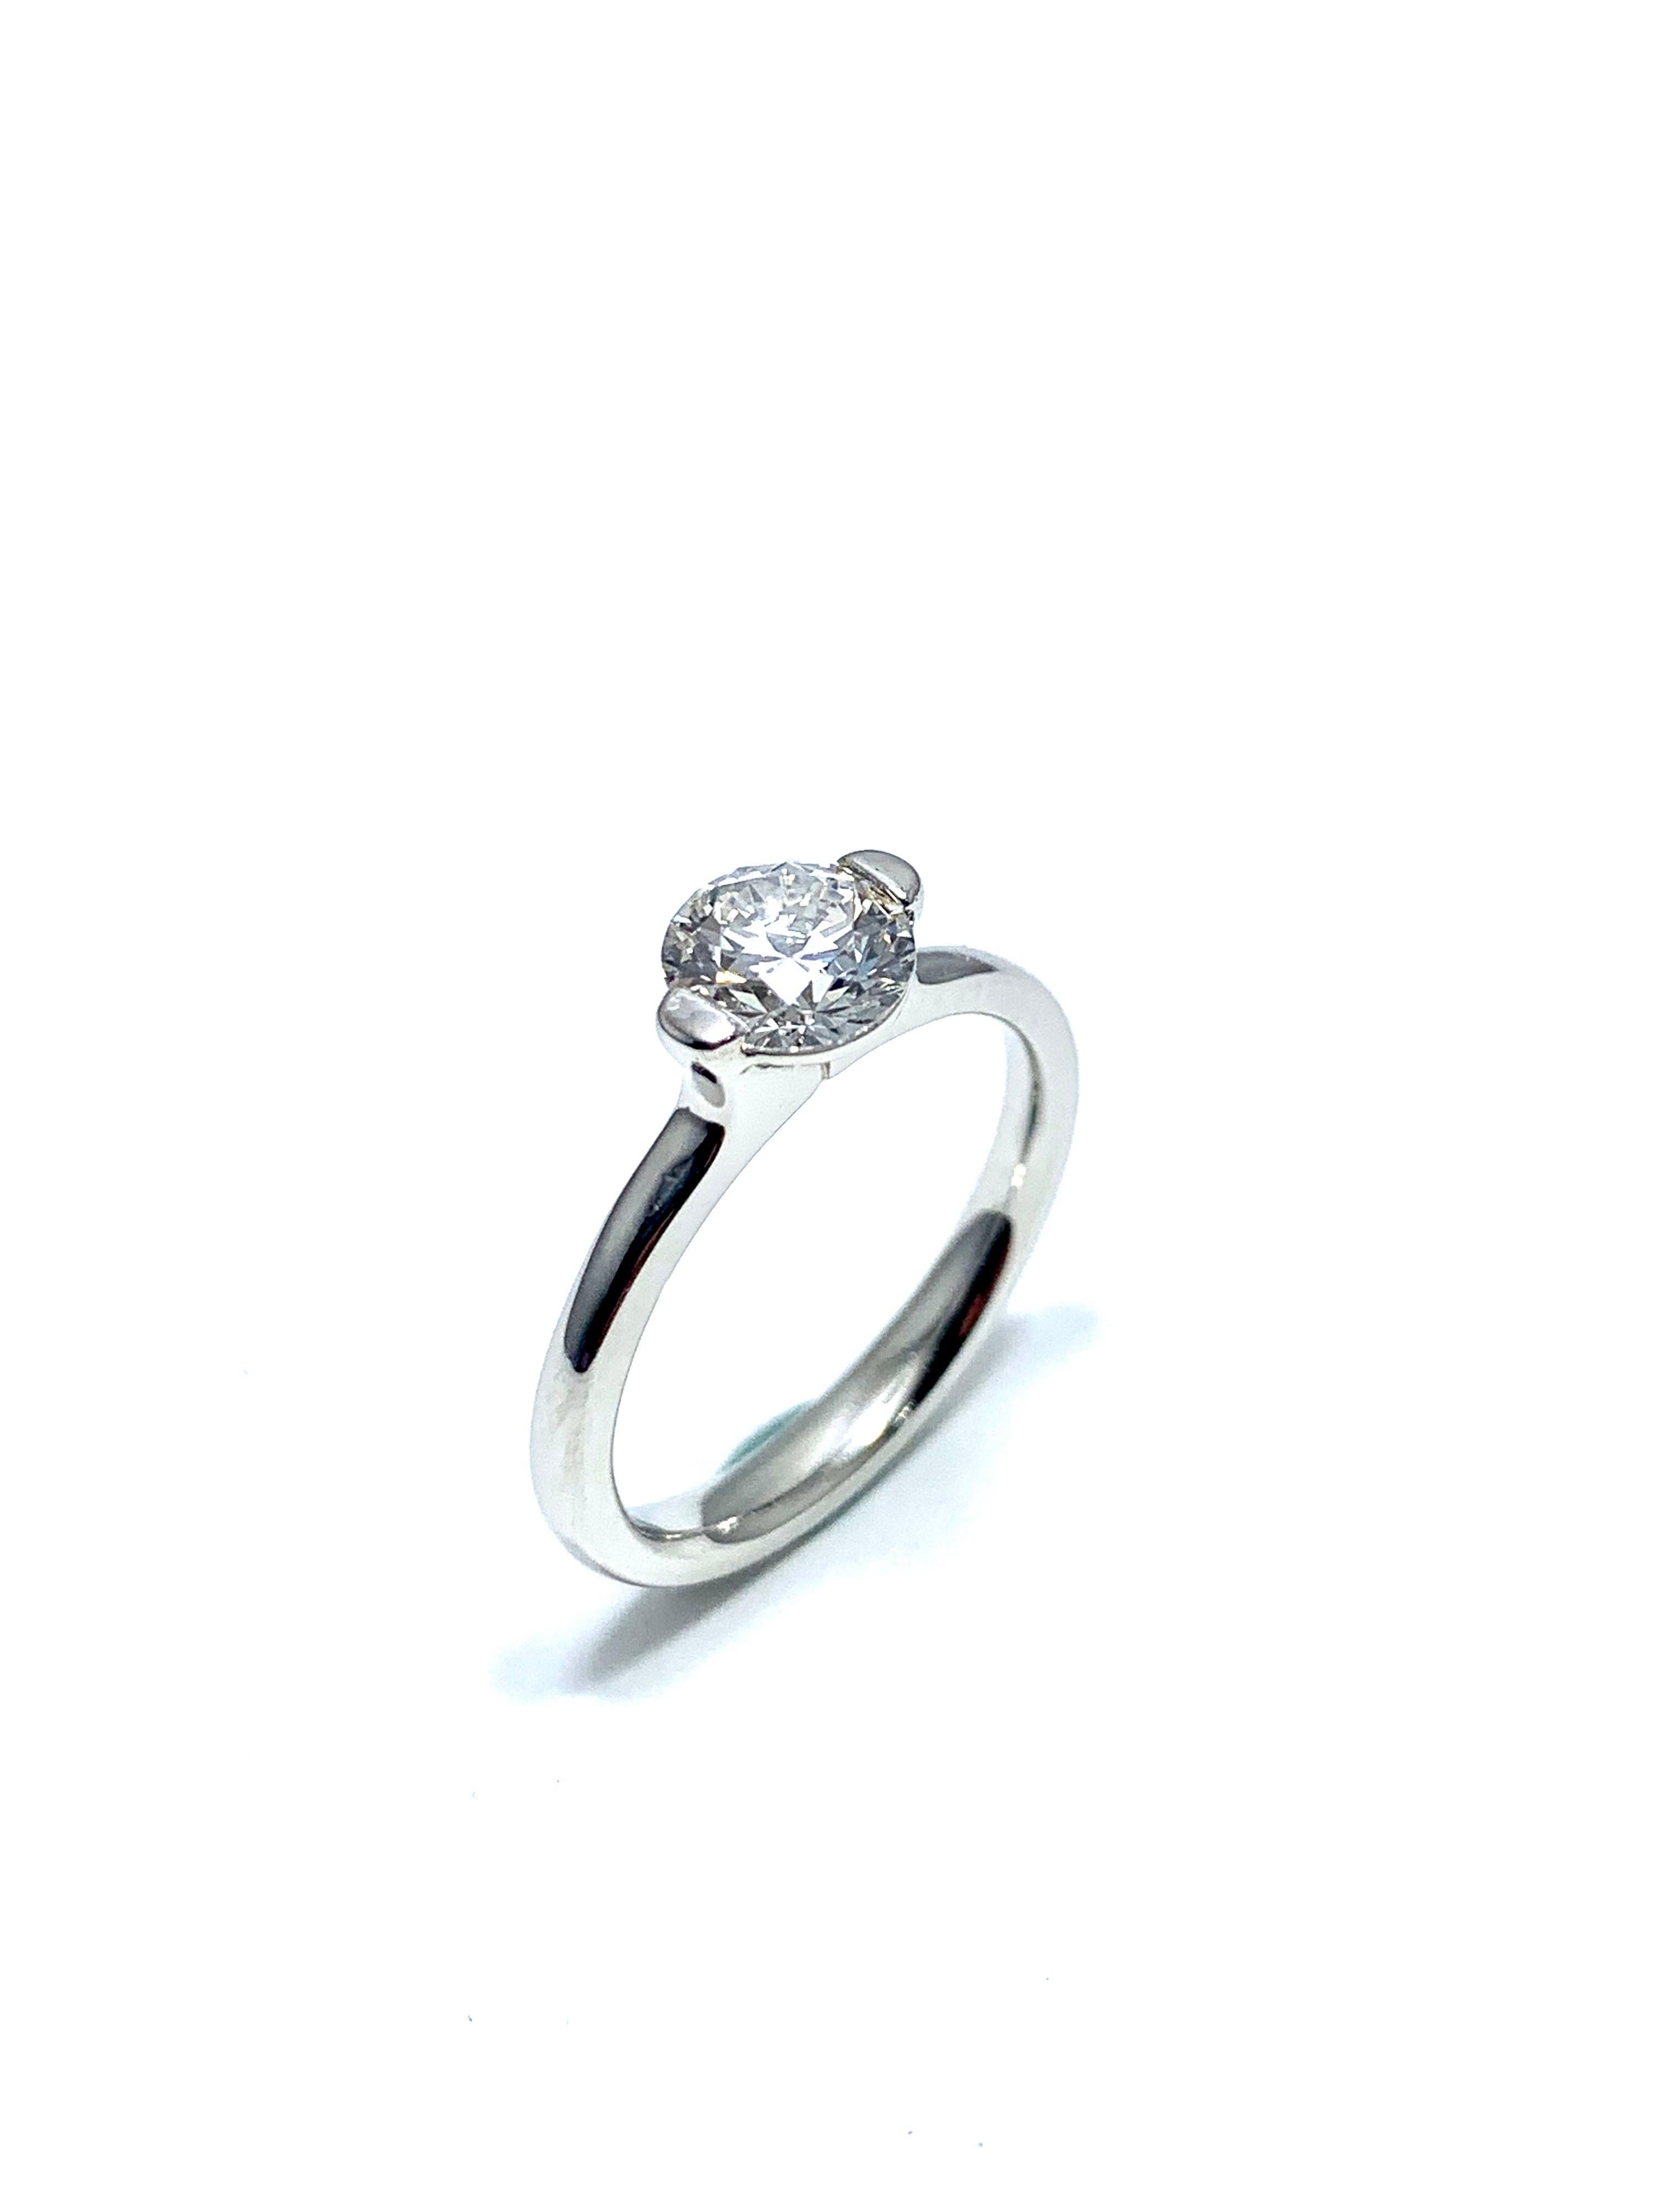 Modern Ideal Cut Round Brilliant 0.84 Carat Diamond Solitaire Platinum Engagement Ring